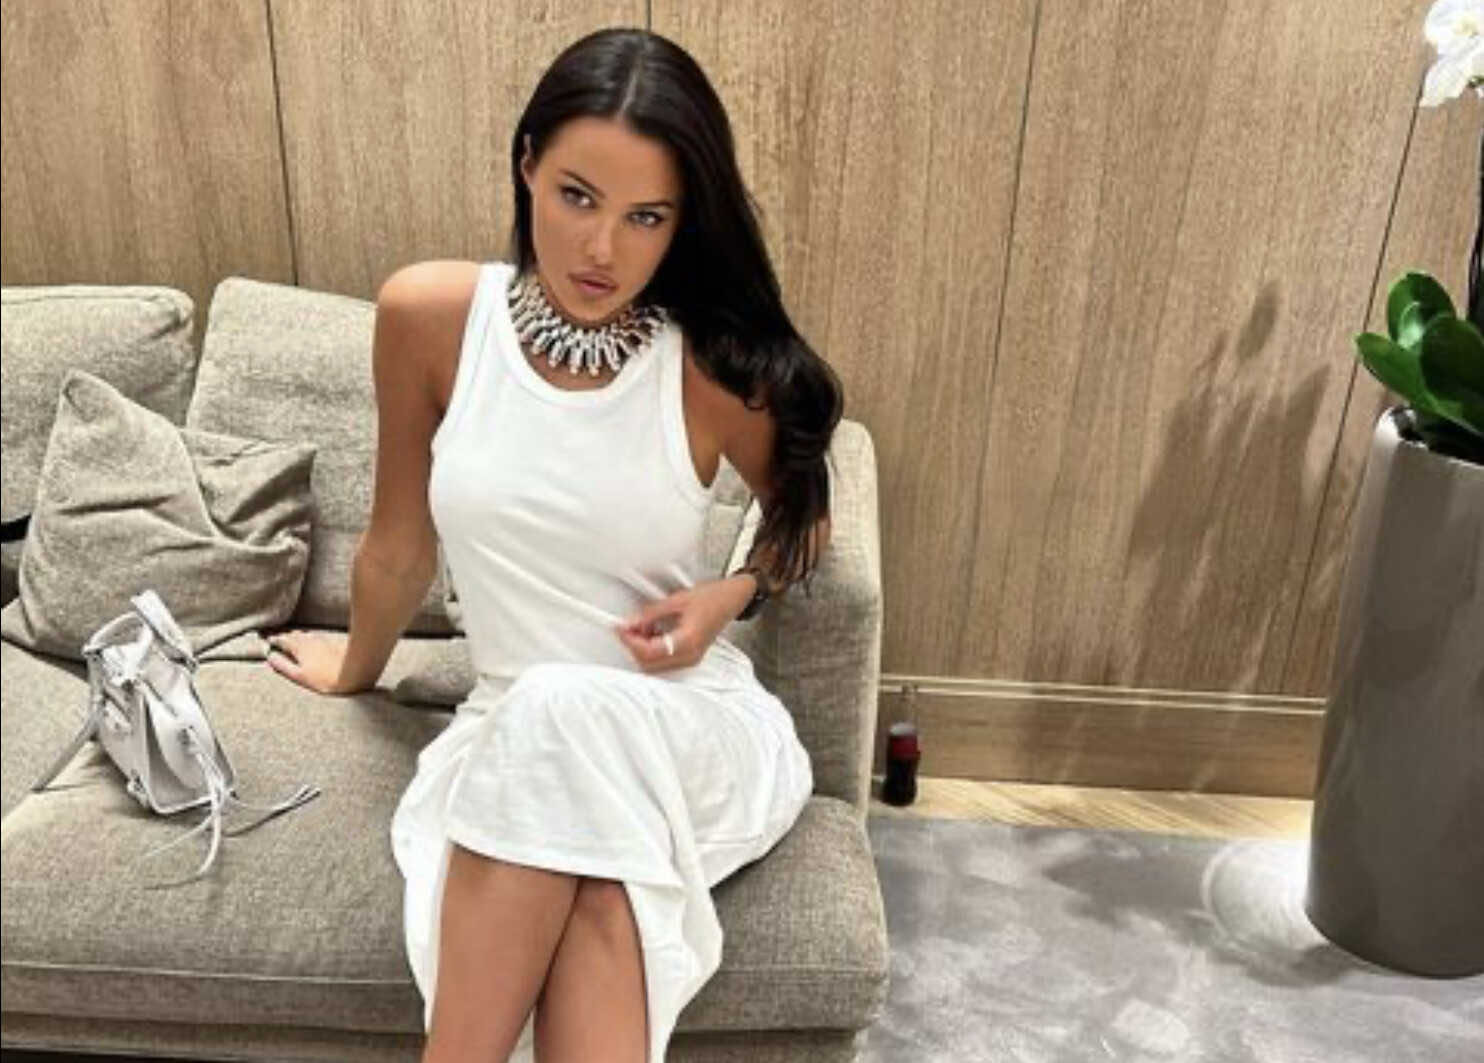 Anastasia Reshetova moved to her lover in Dubai